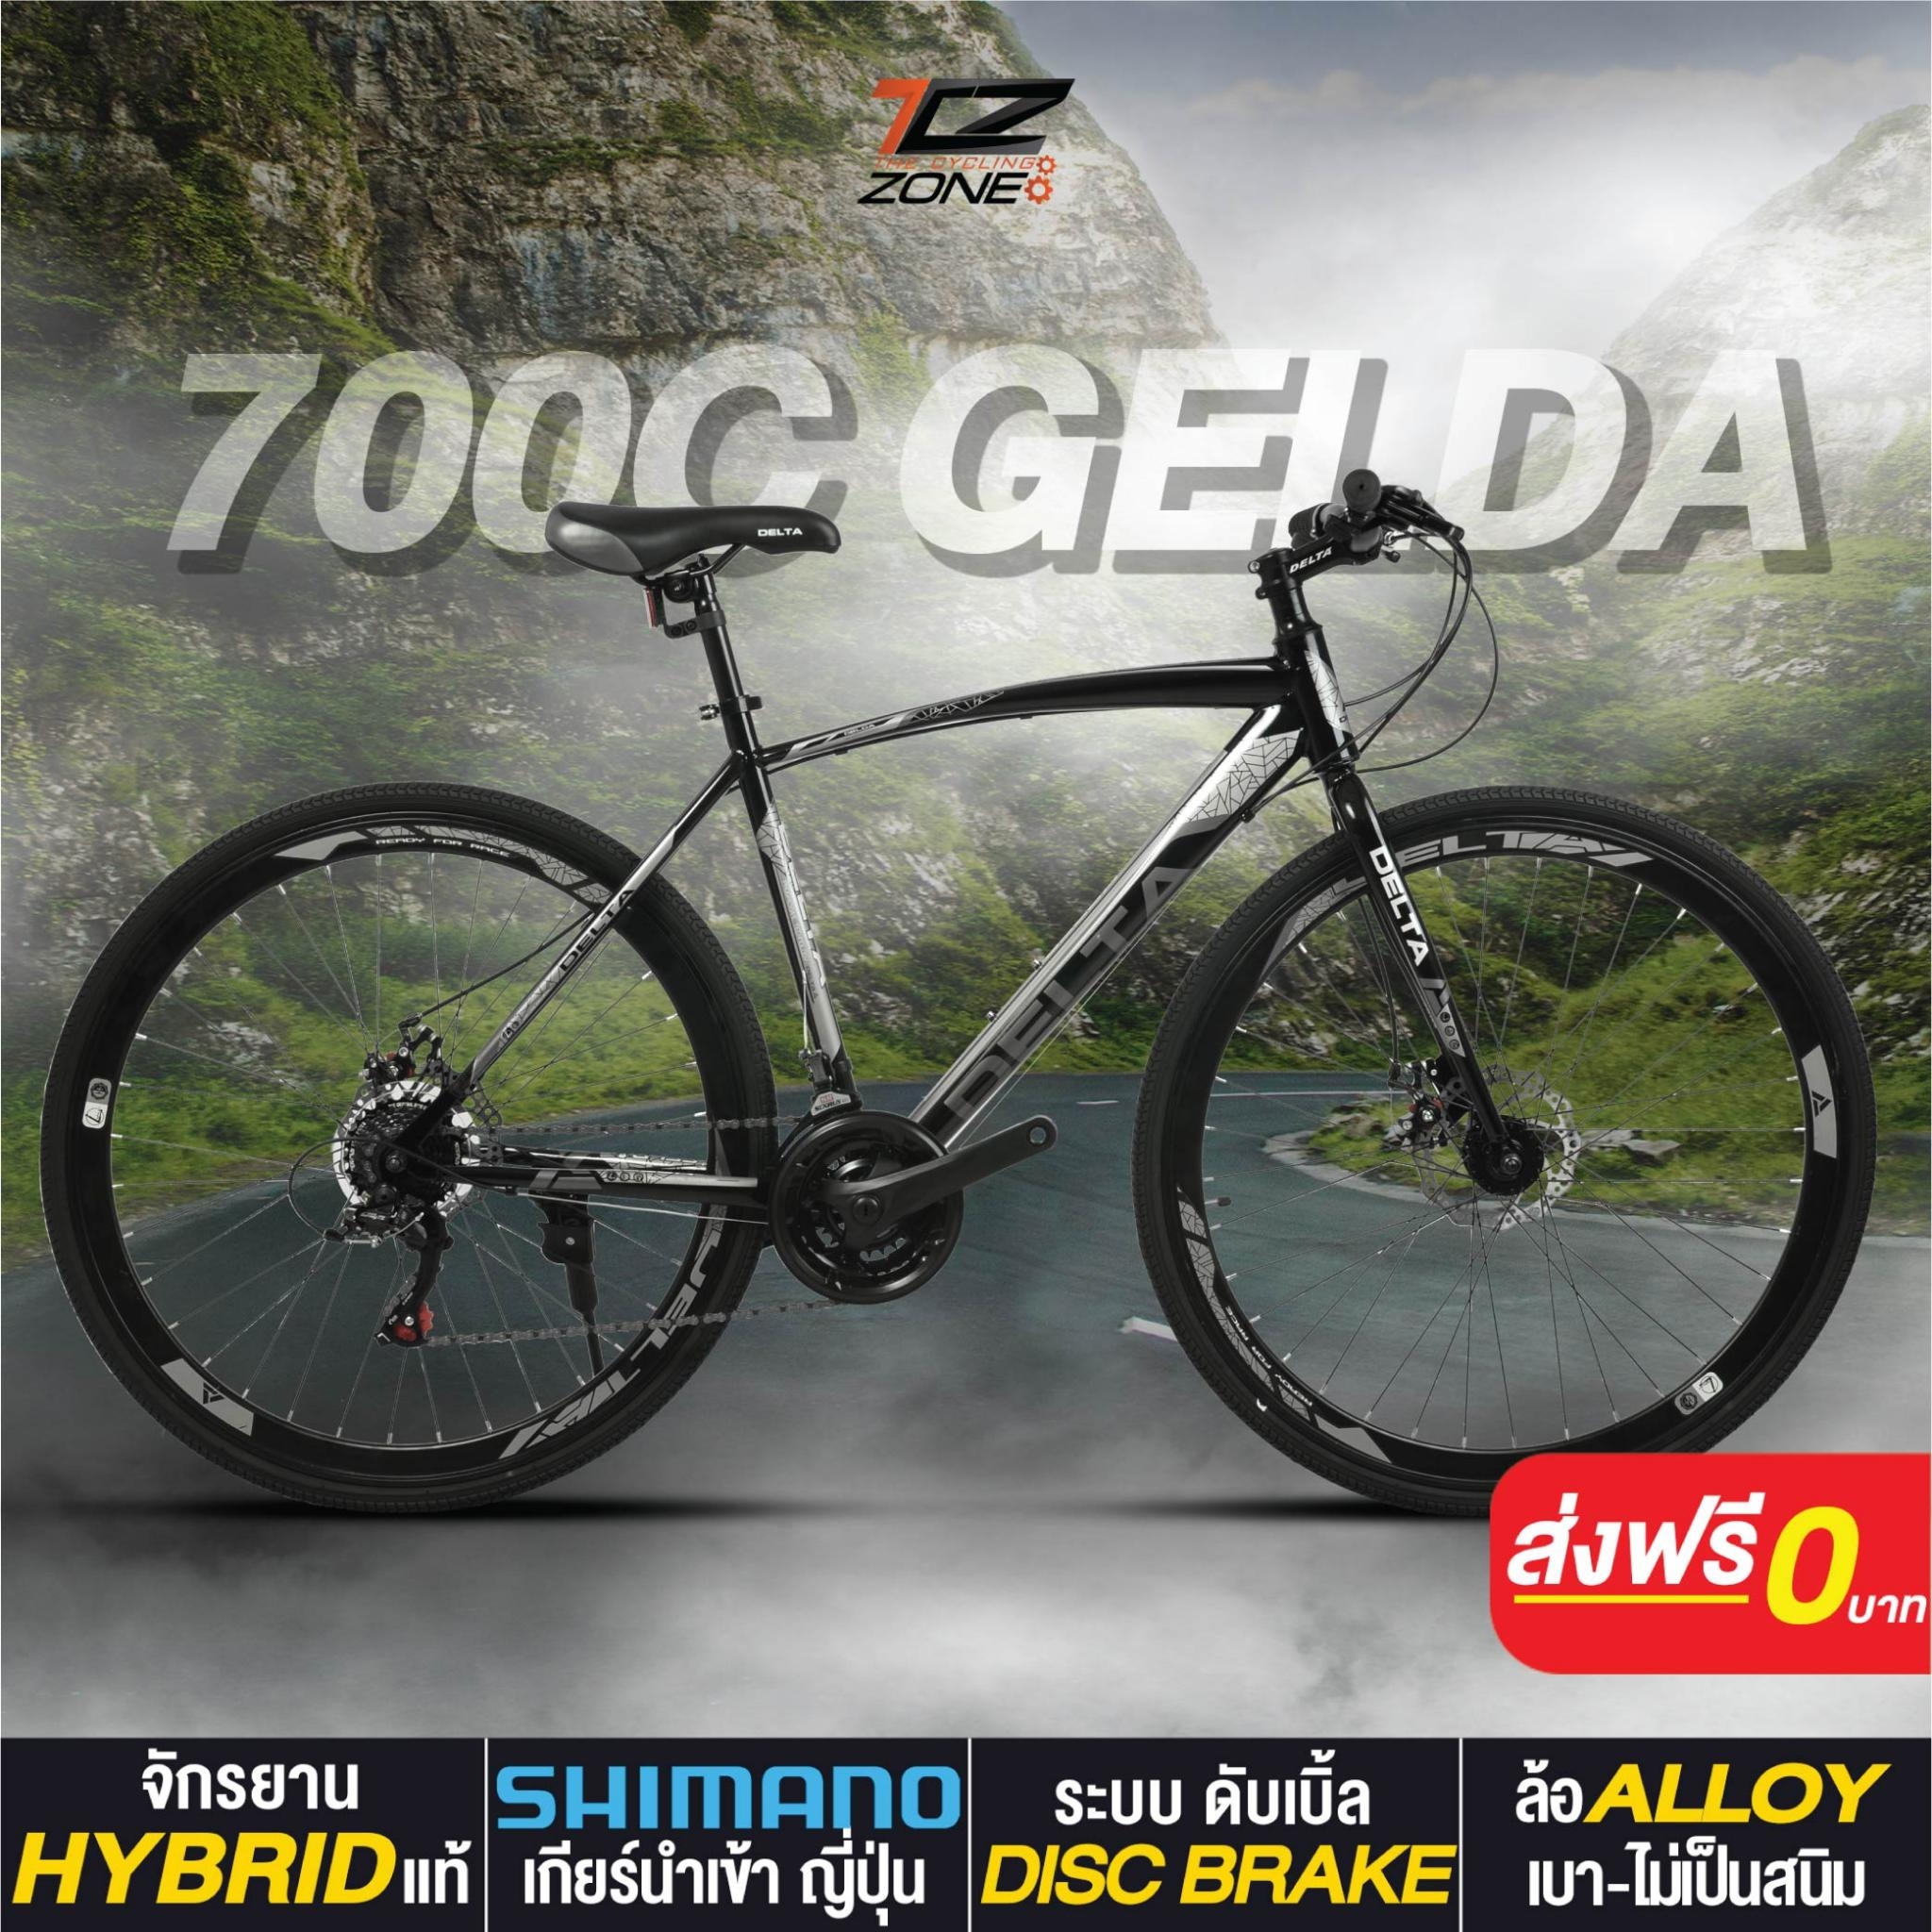 จักรยานไฮบริด 700c DELTA เกียร์ SHIMANO 21 สปีด ไซส์ 49 รุ่น GELDA คละสี By The Cycling Zone